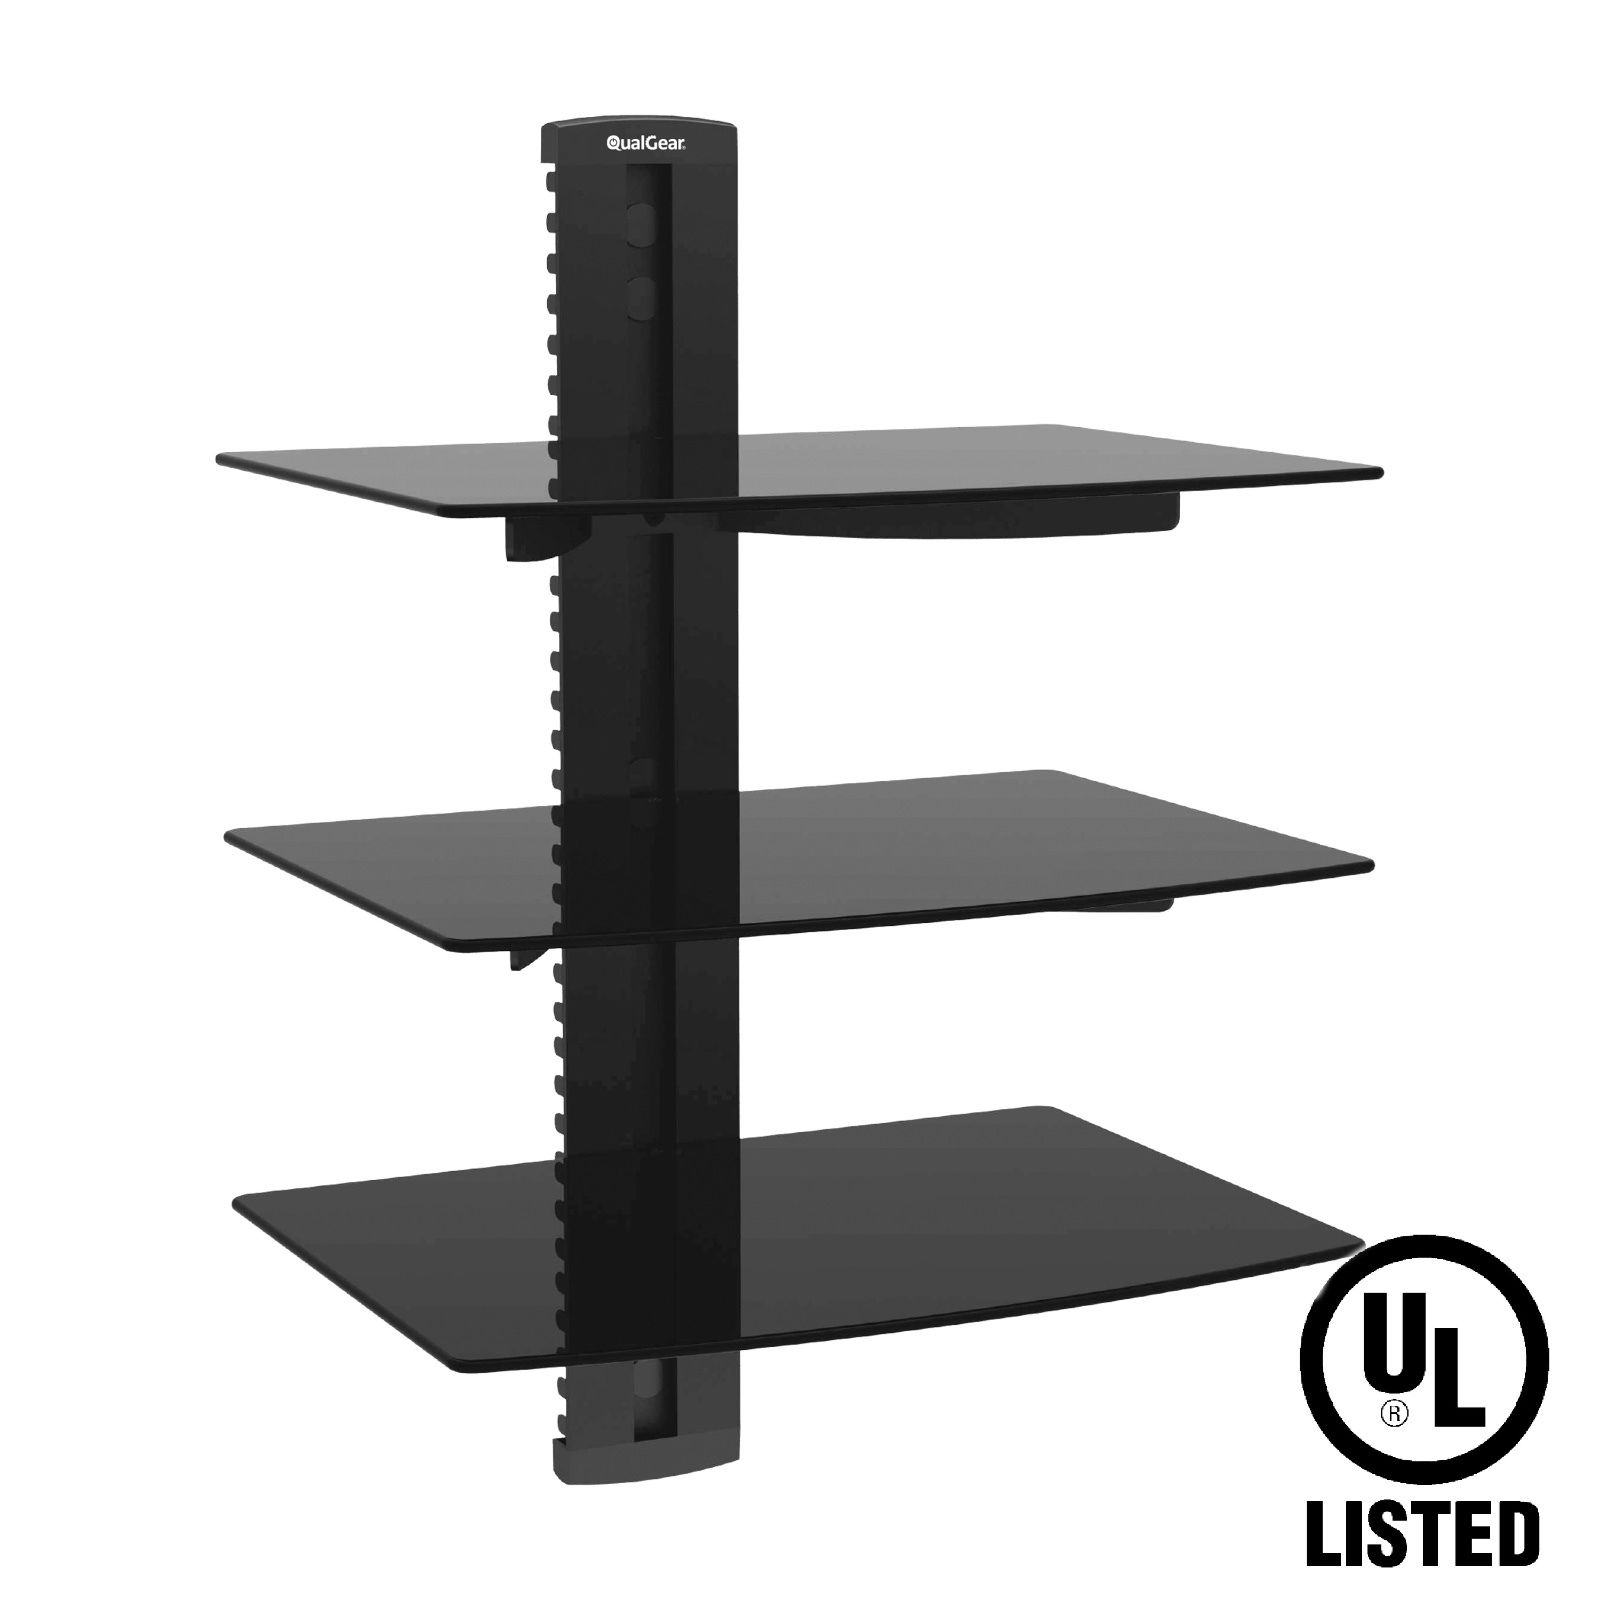 QualGear Universal Triple Shelf Wall Mount for A/V Components upto 8kgs/17.6lbs(x3), Black (QG-DB-003-BLK)